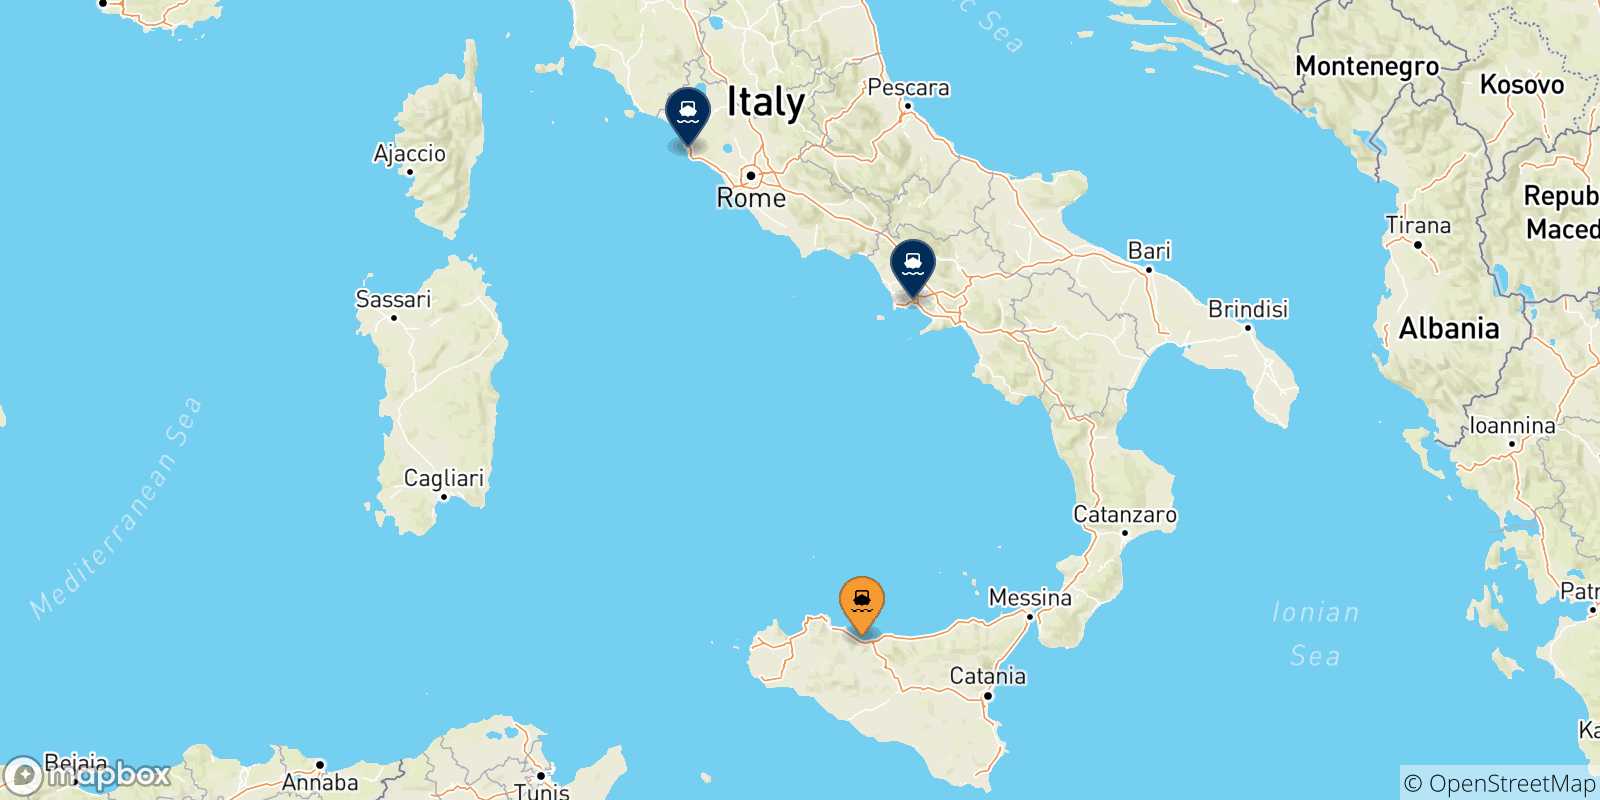 Mappa delle possibili rotte tra Termini Imerese e l'Italia